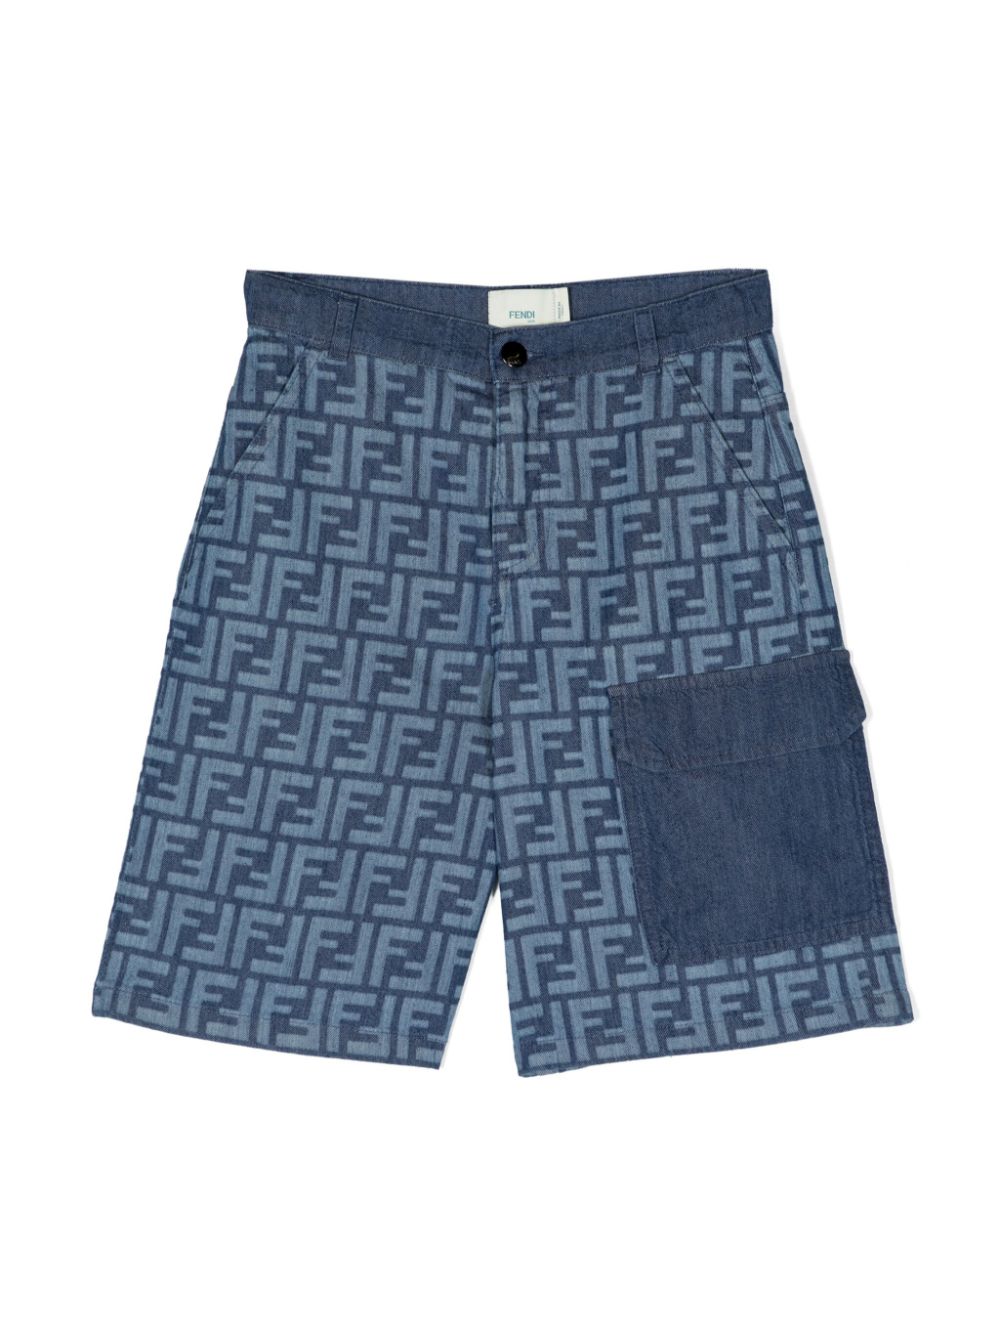 Chambray FF motif shorts